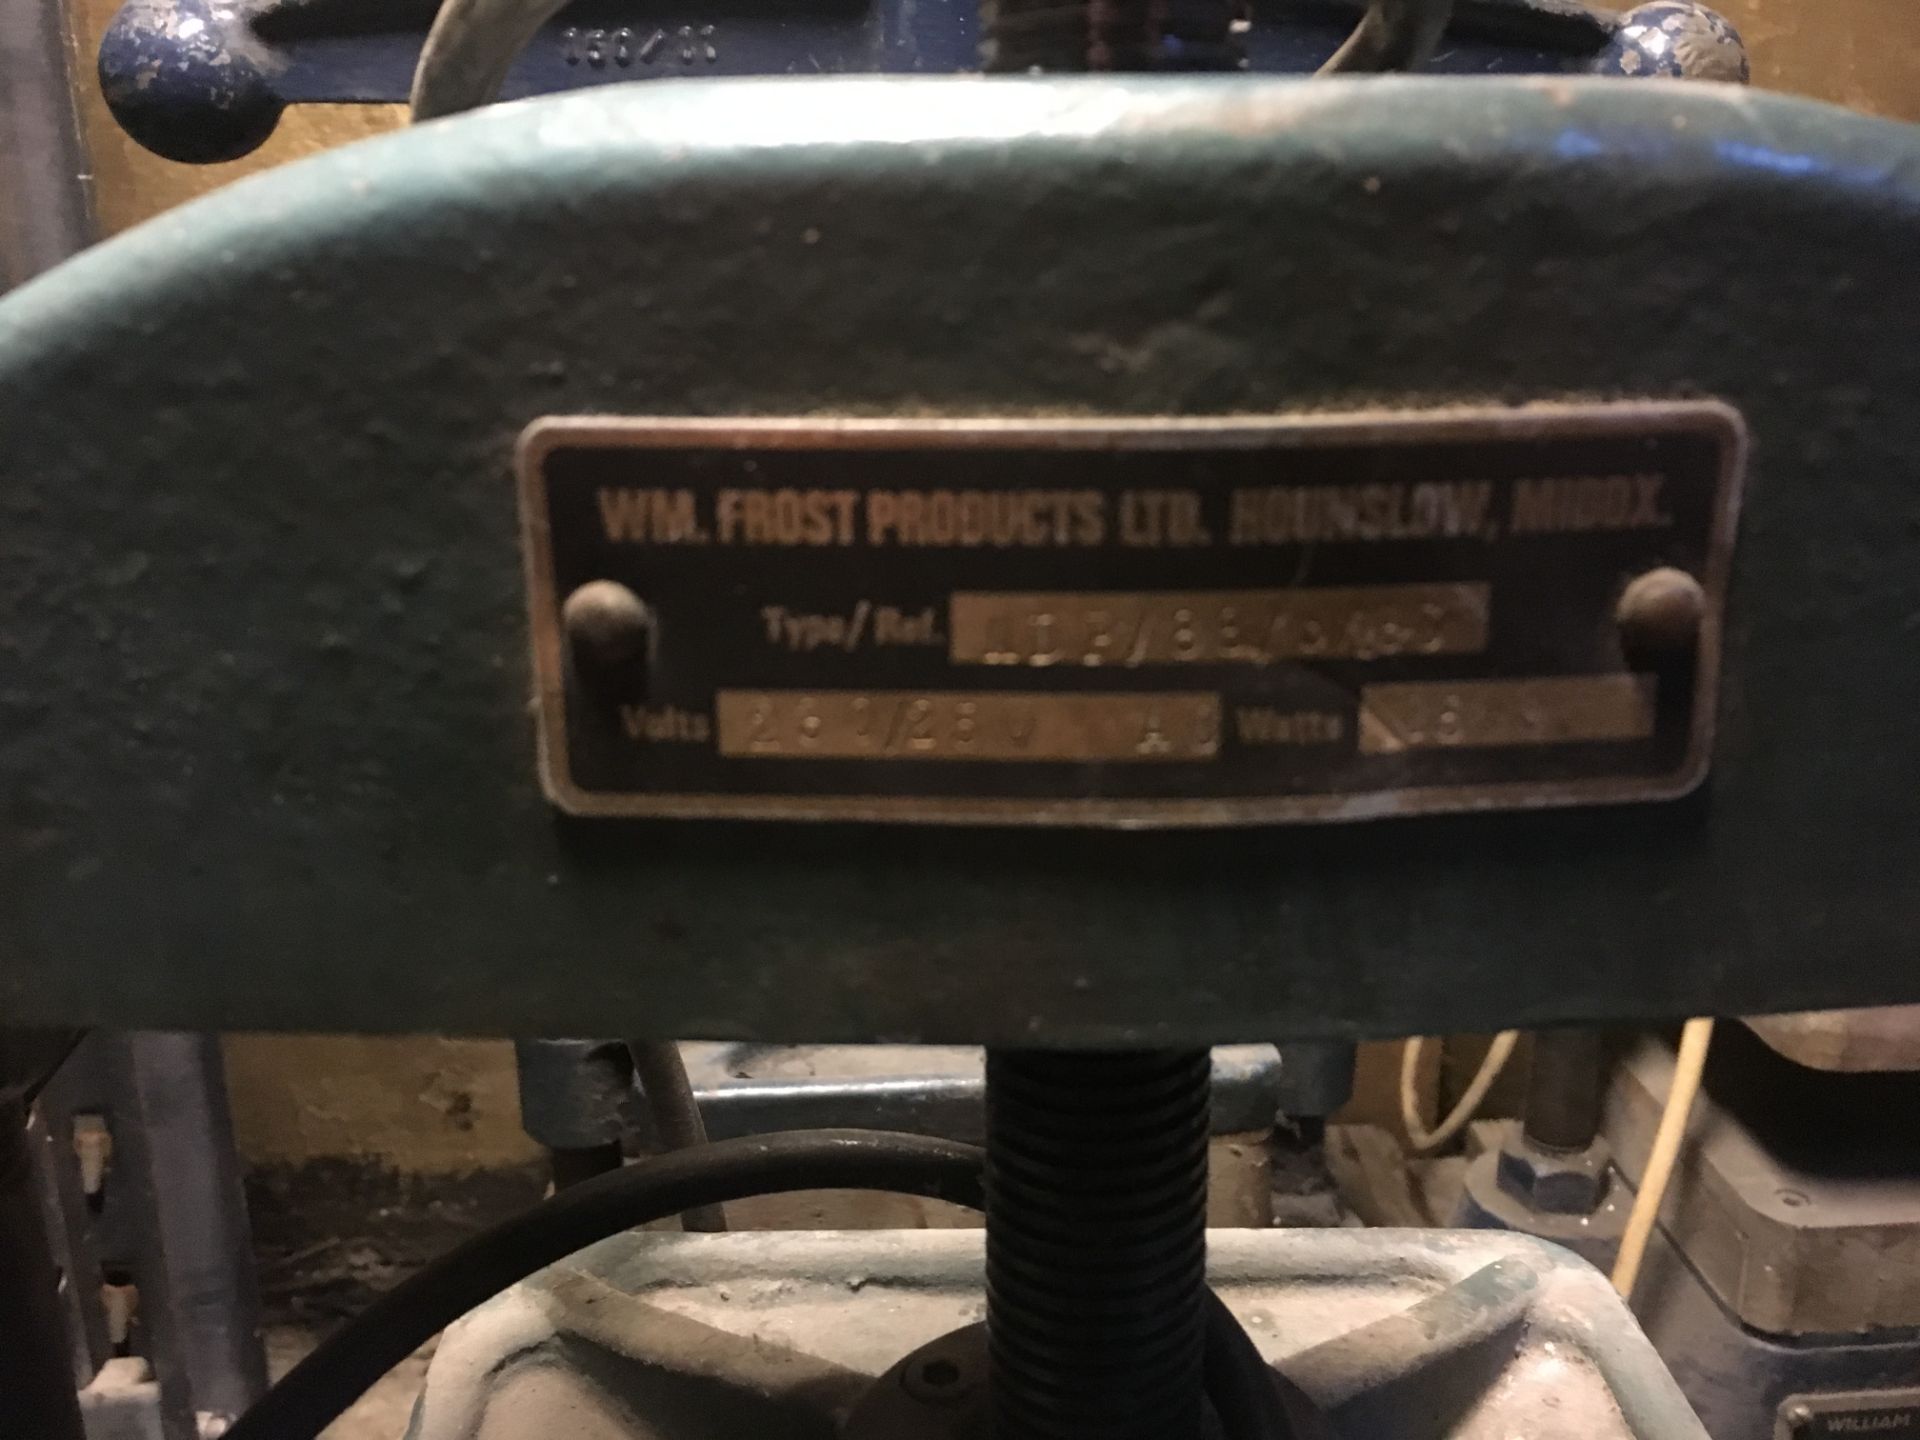 William Frost heated bench top platen press, 8" x 8" - Bild 2 aus 2